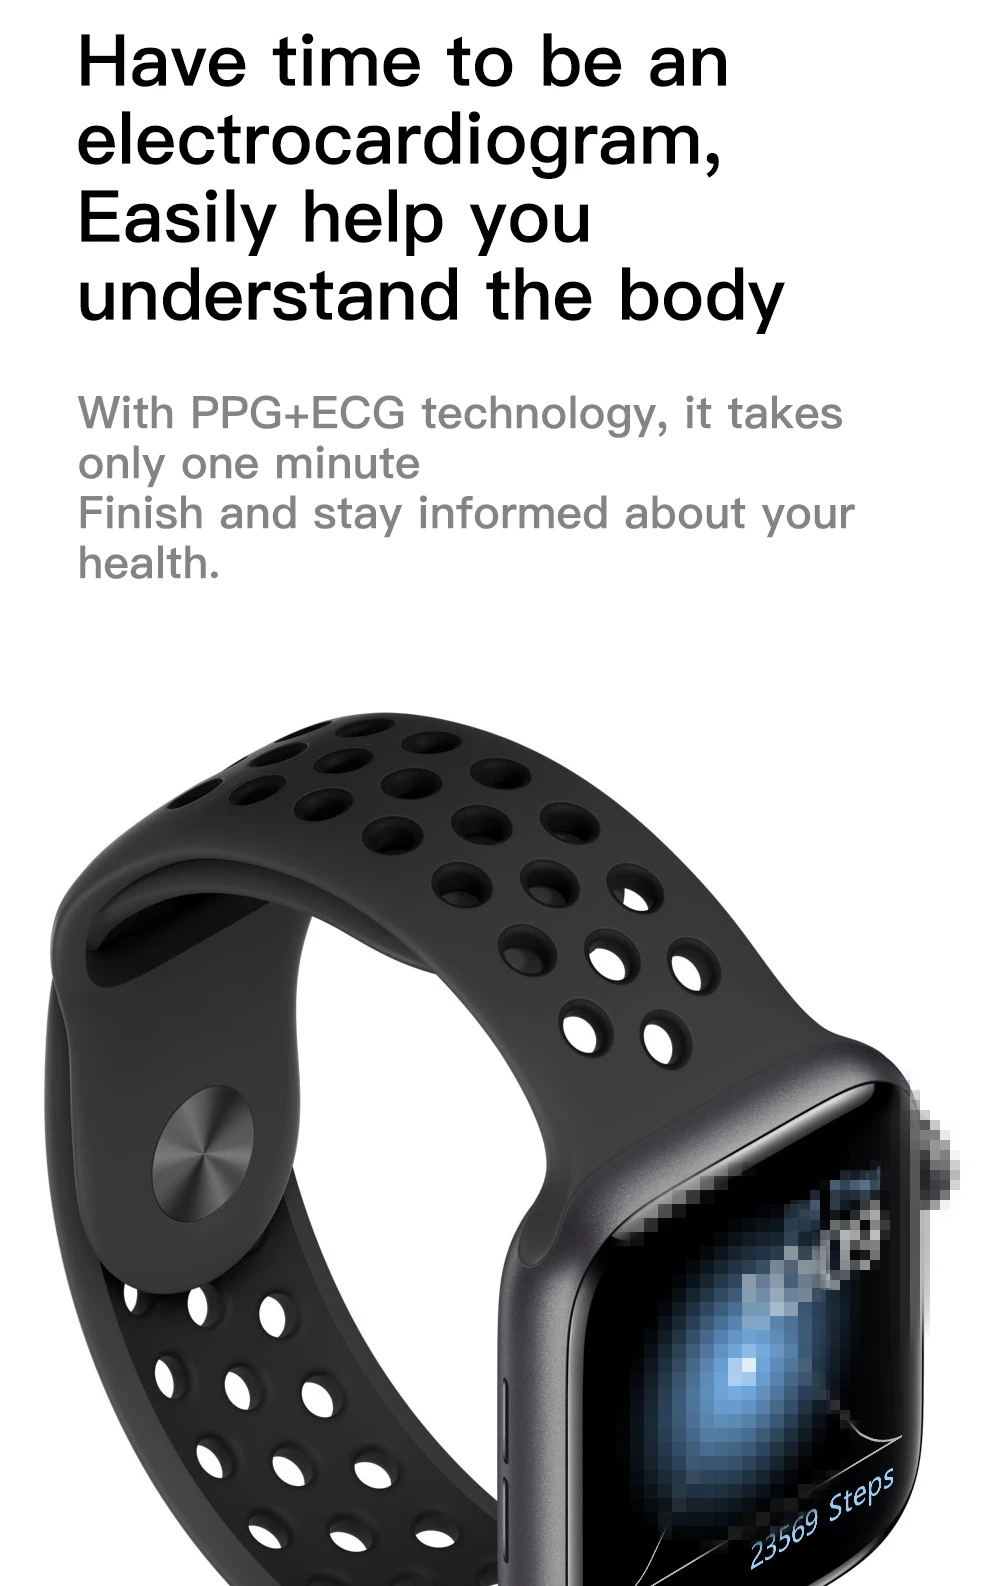 Часы 5 IWO 12 Pro Bluetooth Смарт часы 1:1 Смарт часы 44 мм чехол для Apple IOS Android телефон Smartwatch ЭКГ монитор сердечного ритма